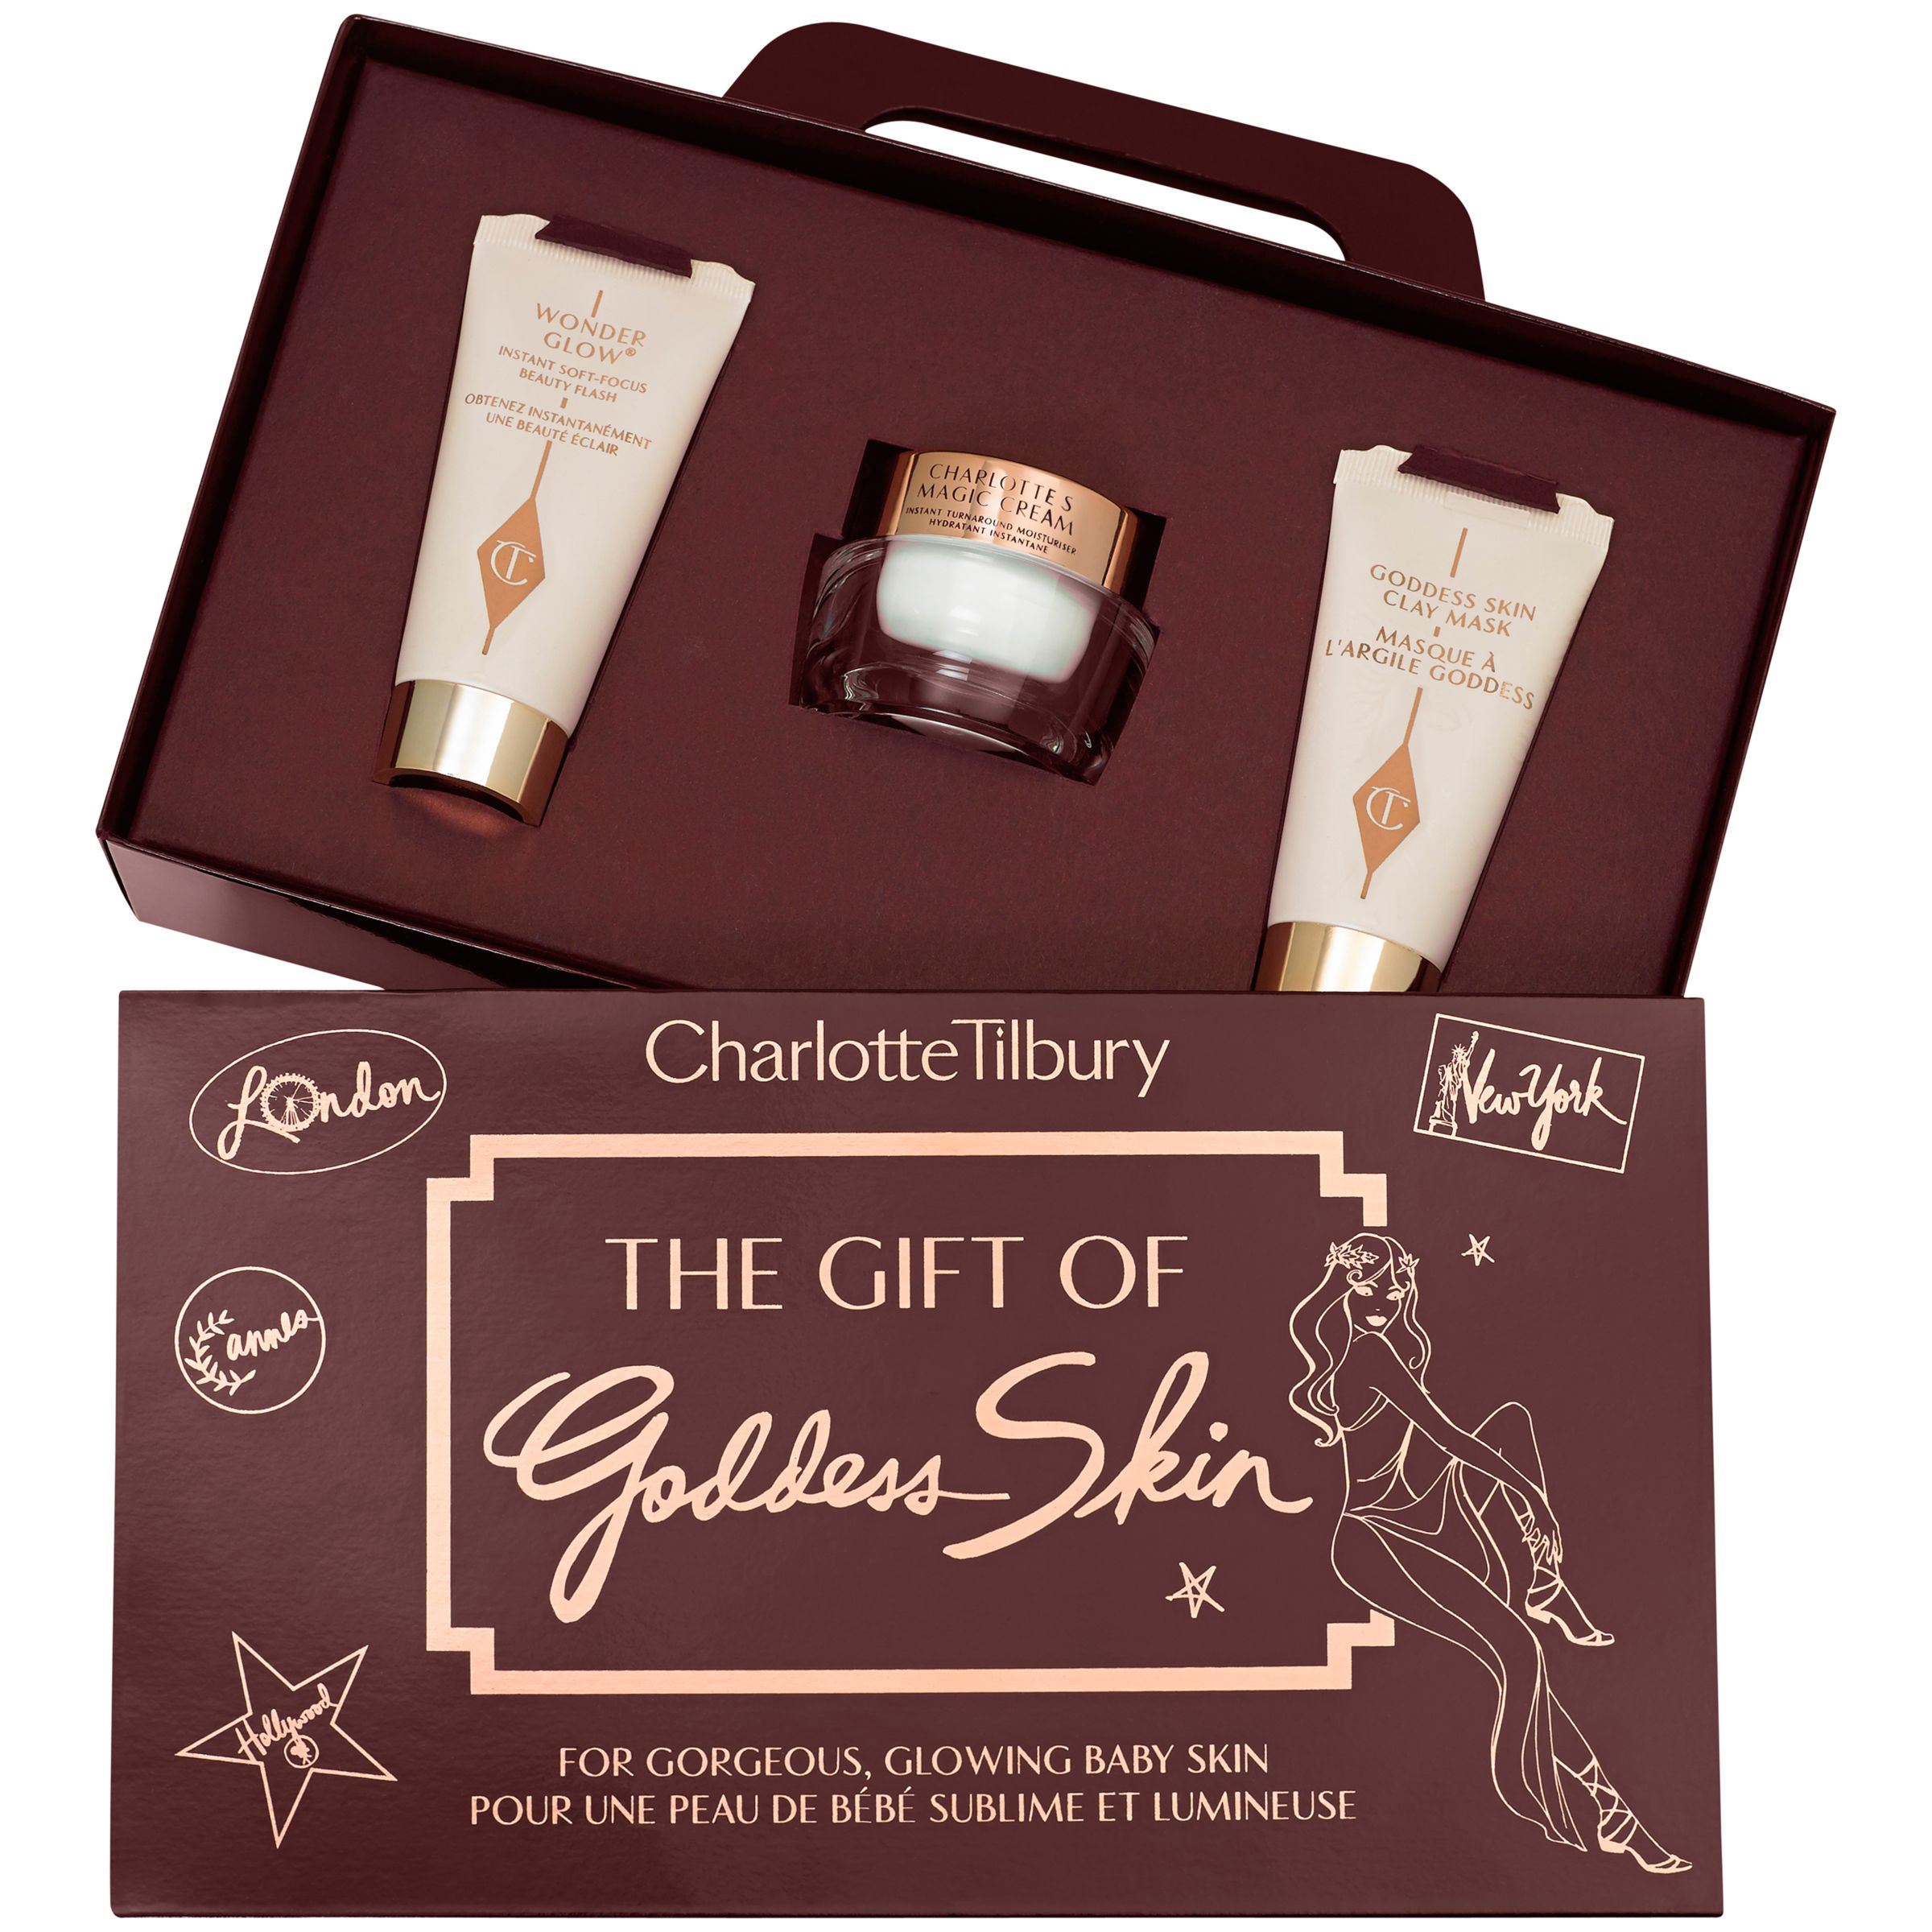 Buy Charlotte Tilbury The Gift Of Goddess Skin Travel Kit Online at johnlewis.com